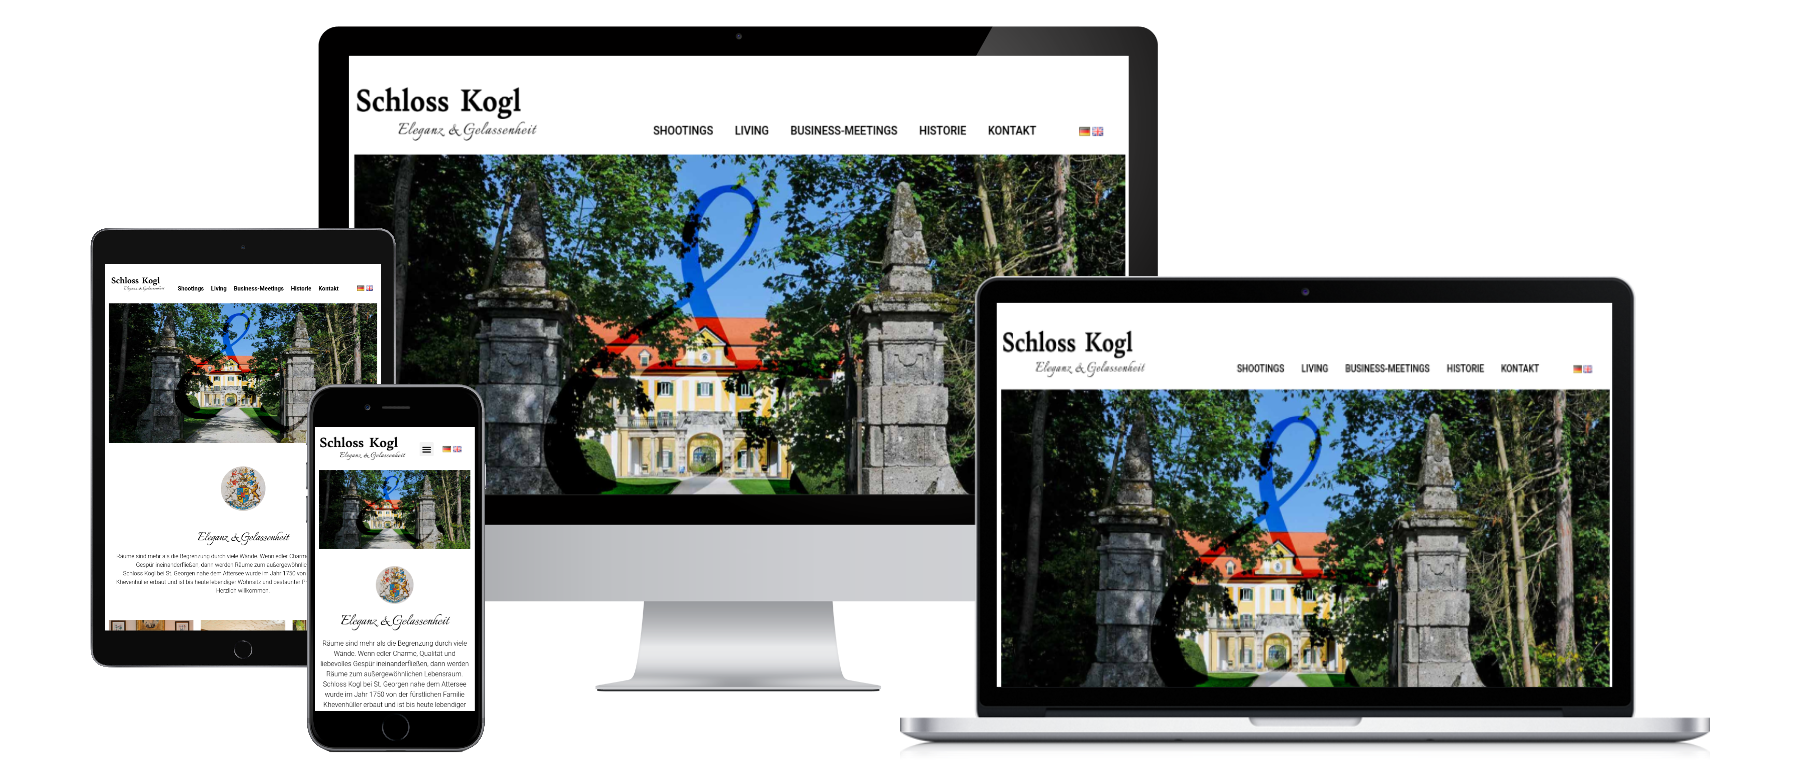 Mockup Bild von mehreren Bildschirmen für die Schloss Kohl Website